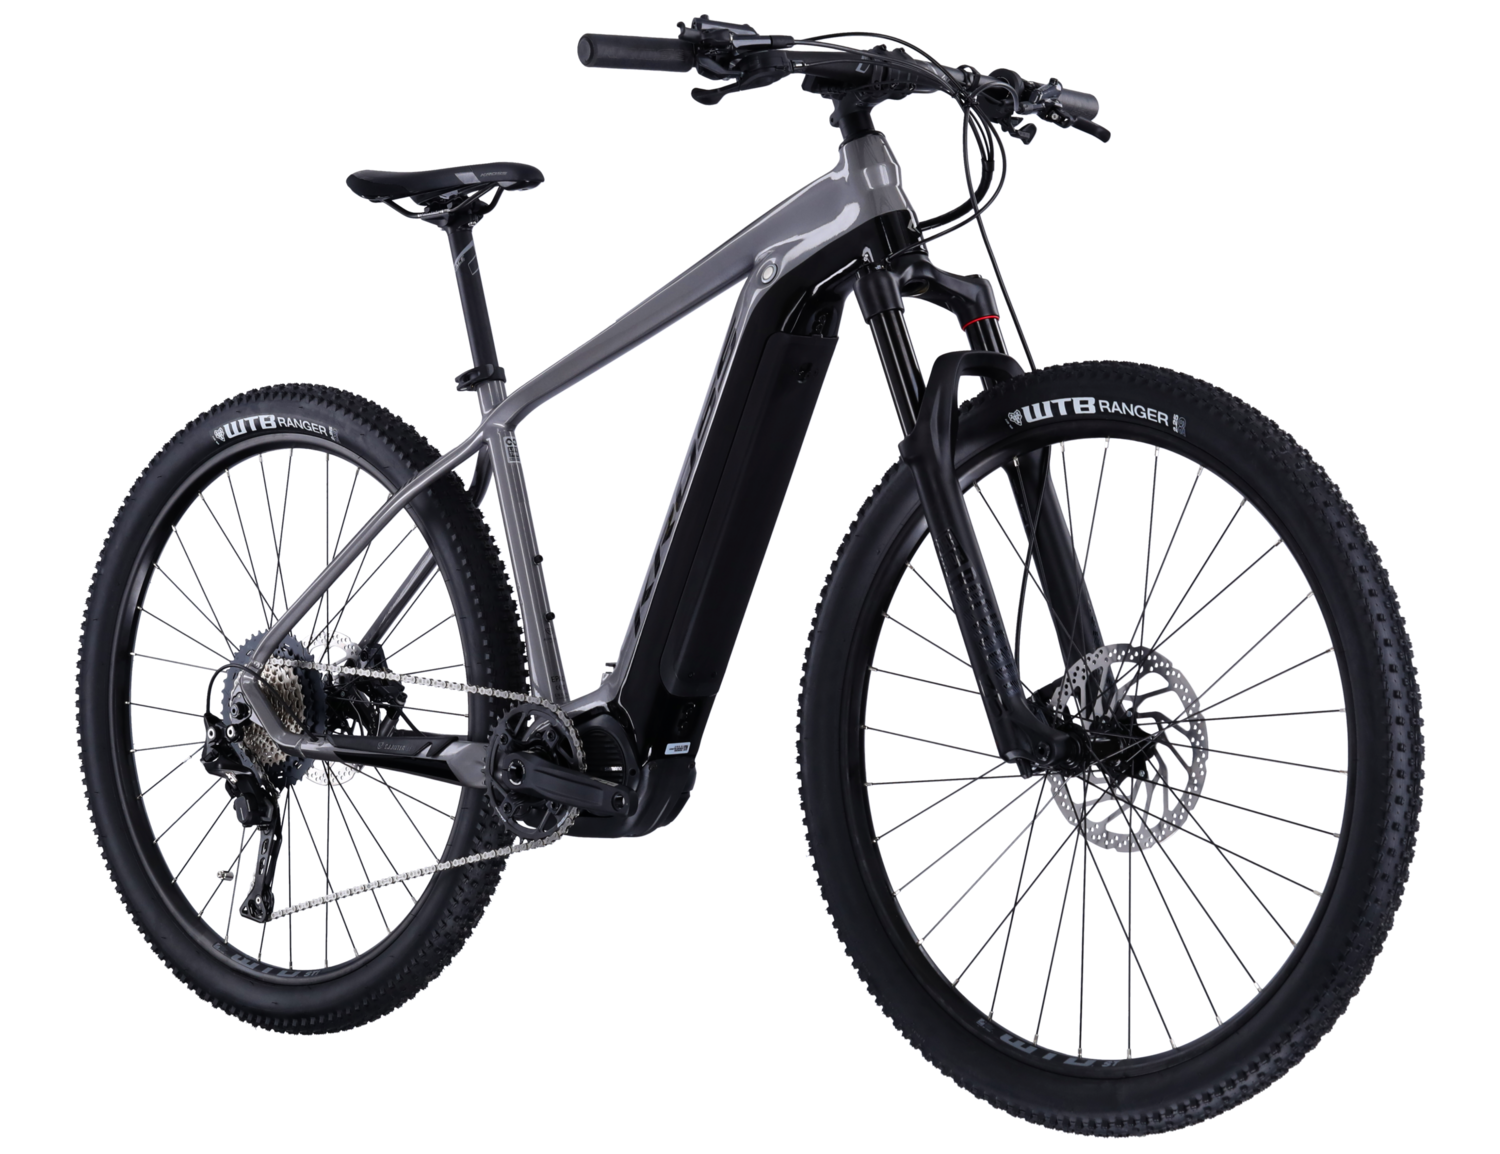  Elektryczny rower górski Ebike MTB XC KROSS Level Boost 3.0 630 Wh na aluminiowej ramie w kolorze grafitowym wyposażony w osprzęt Shimano i napęd elektryczny Shimano 